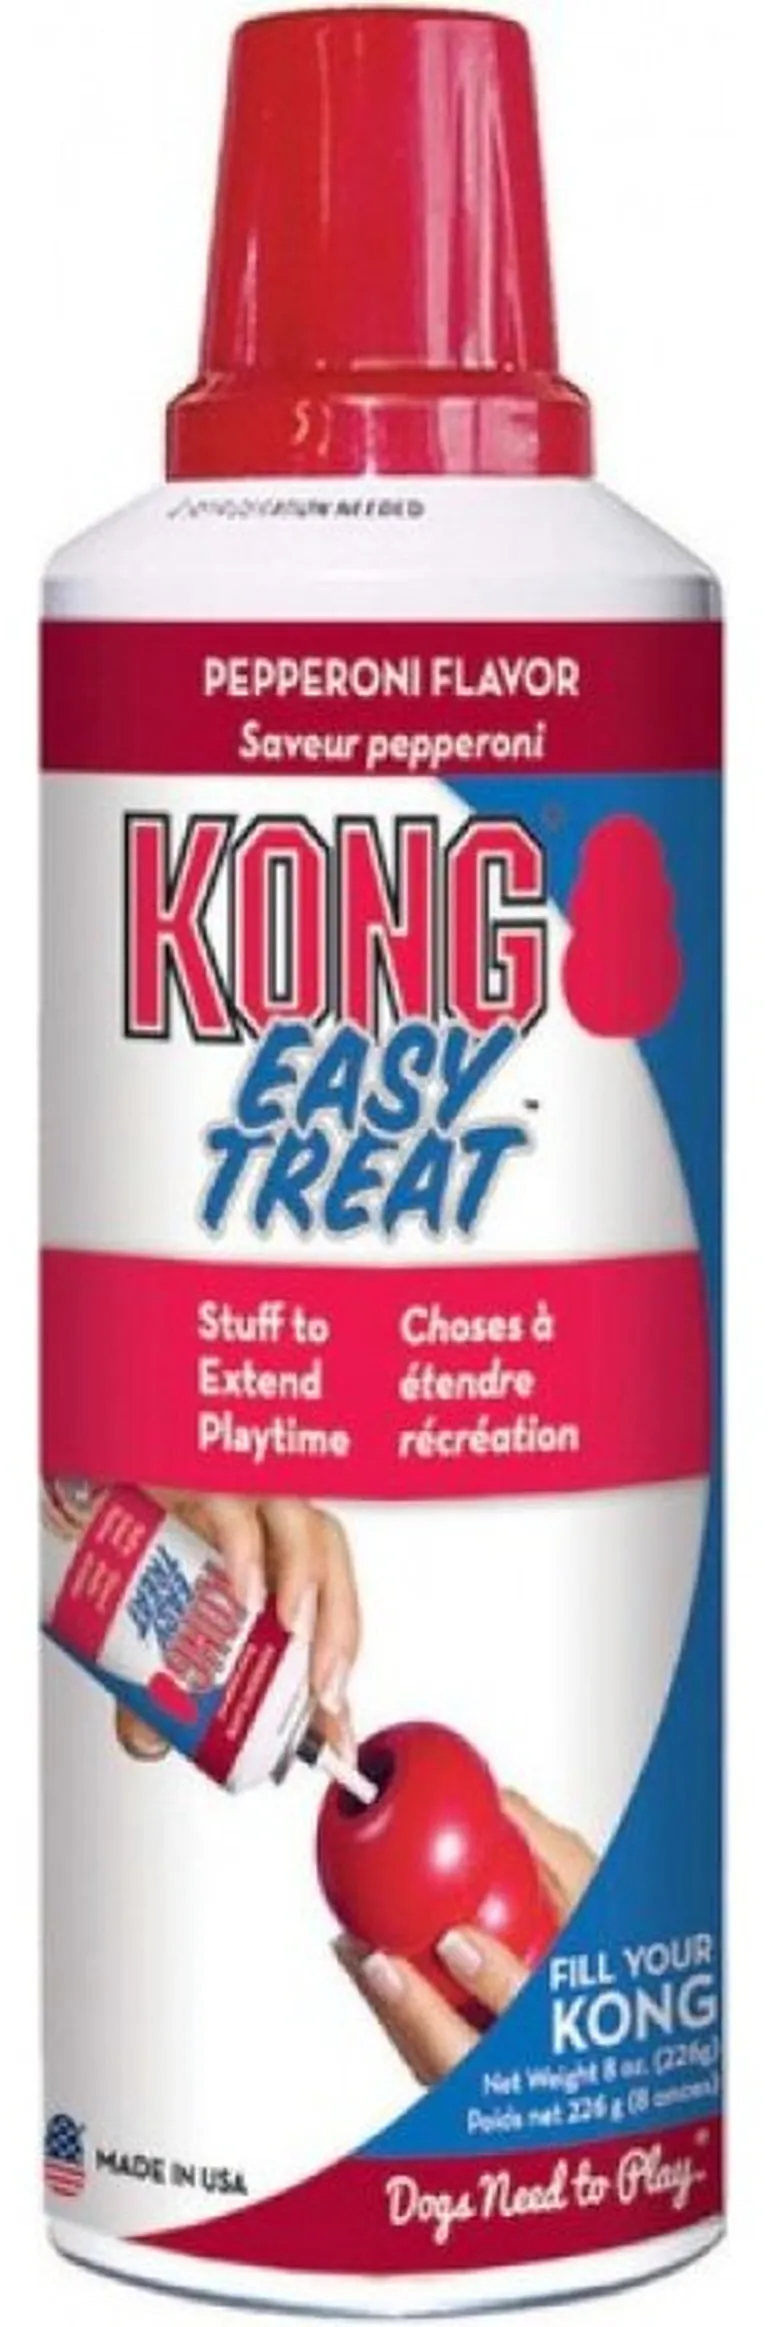 KONG Easy Treat Pepperoni Flavor Photo 1